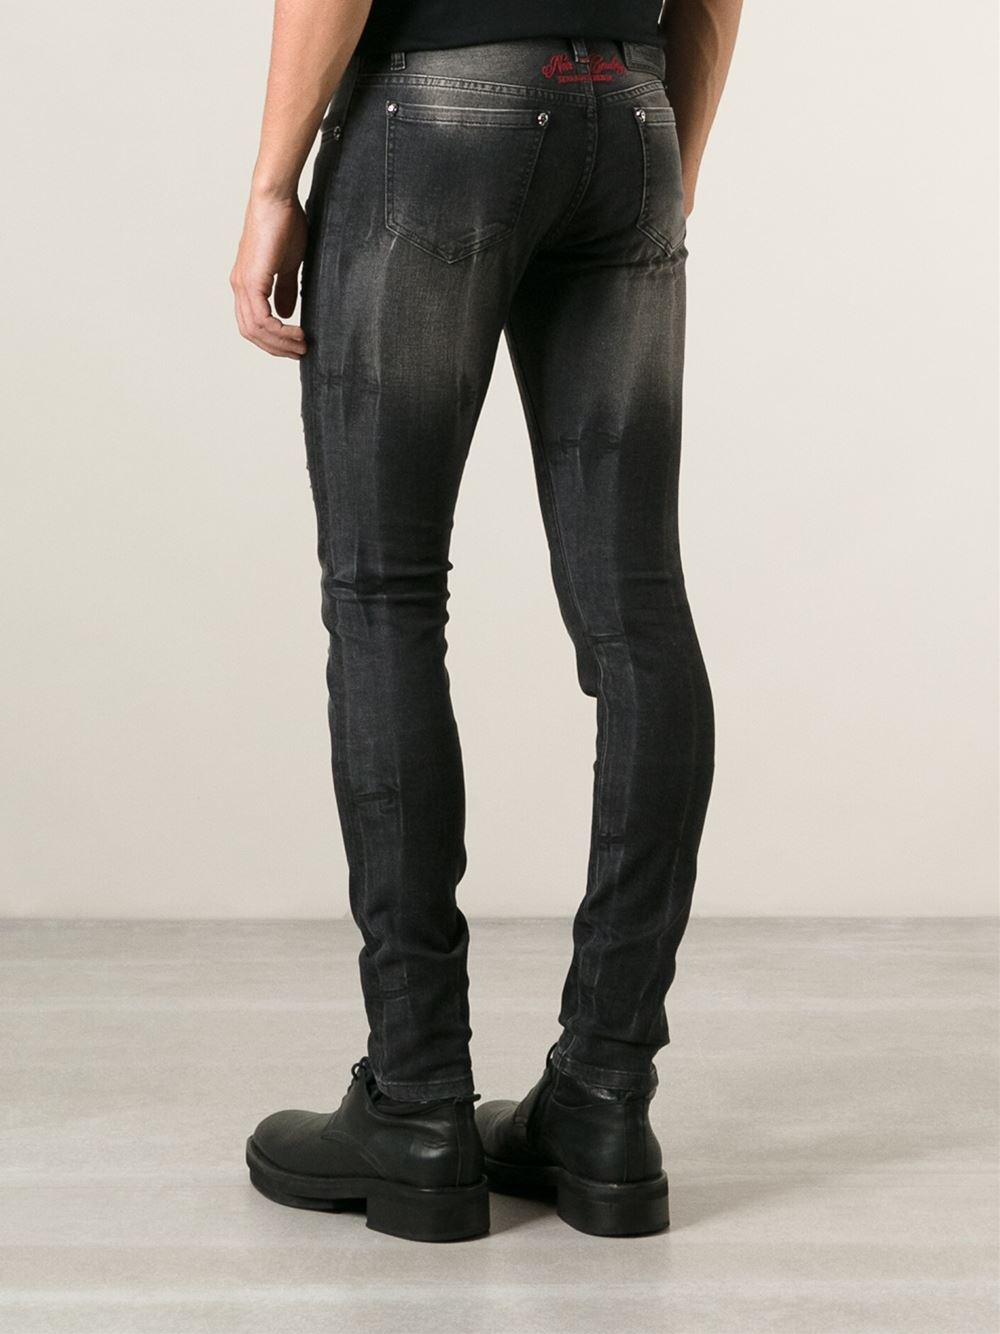 Lyst - Philipp Plein 'Horses' Jeans in Black for Men